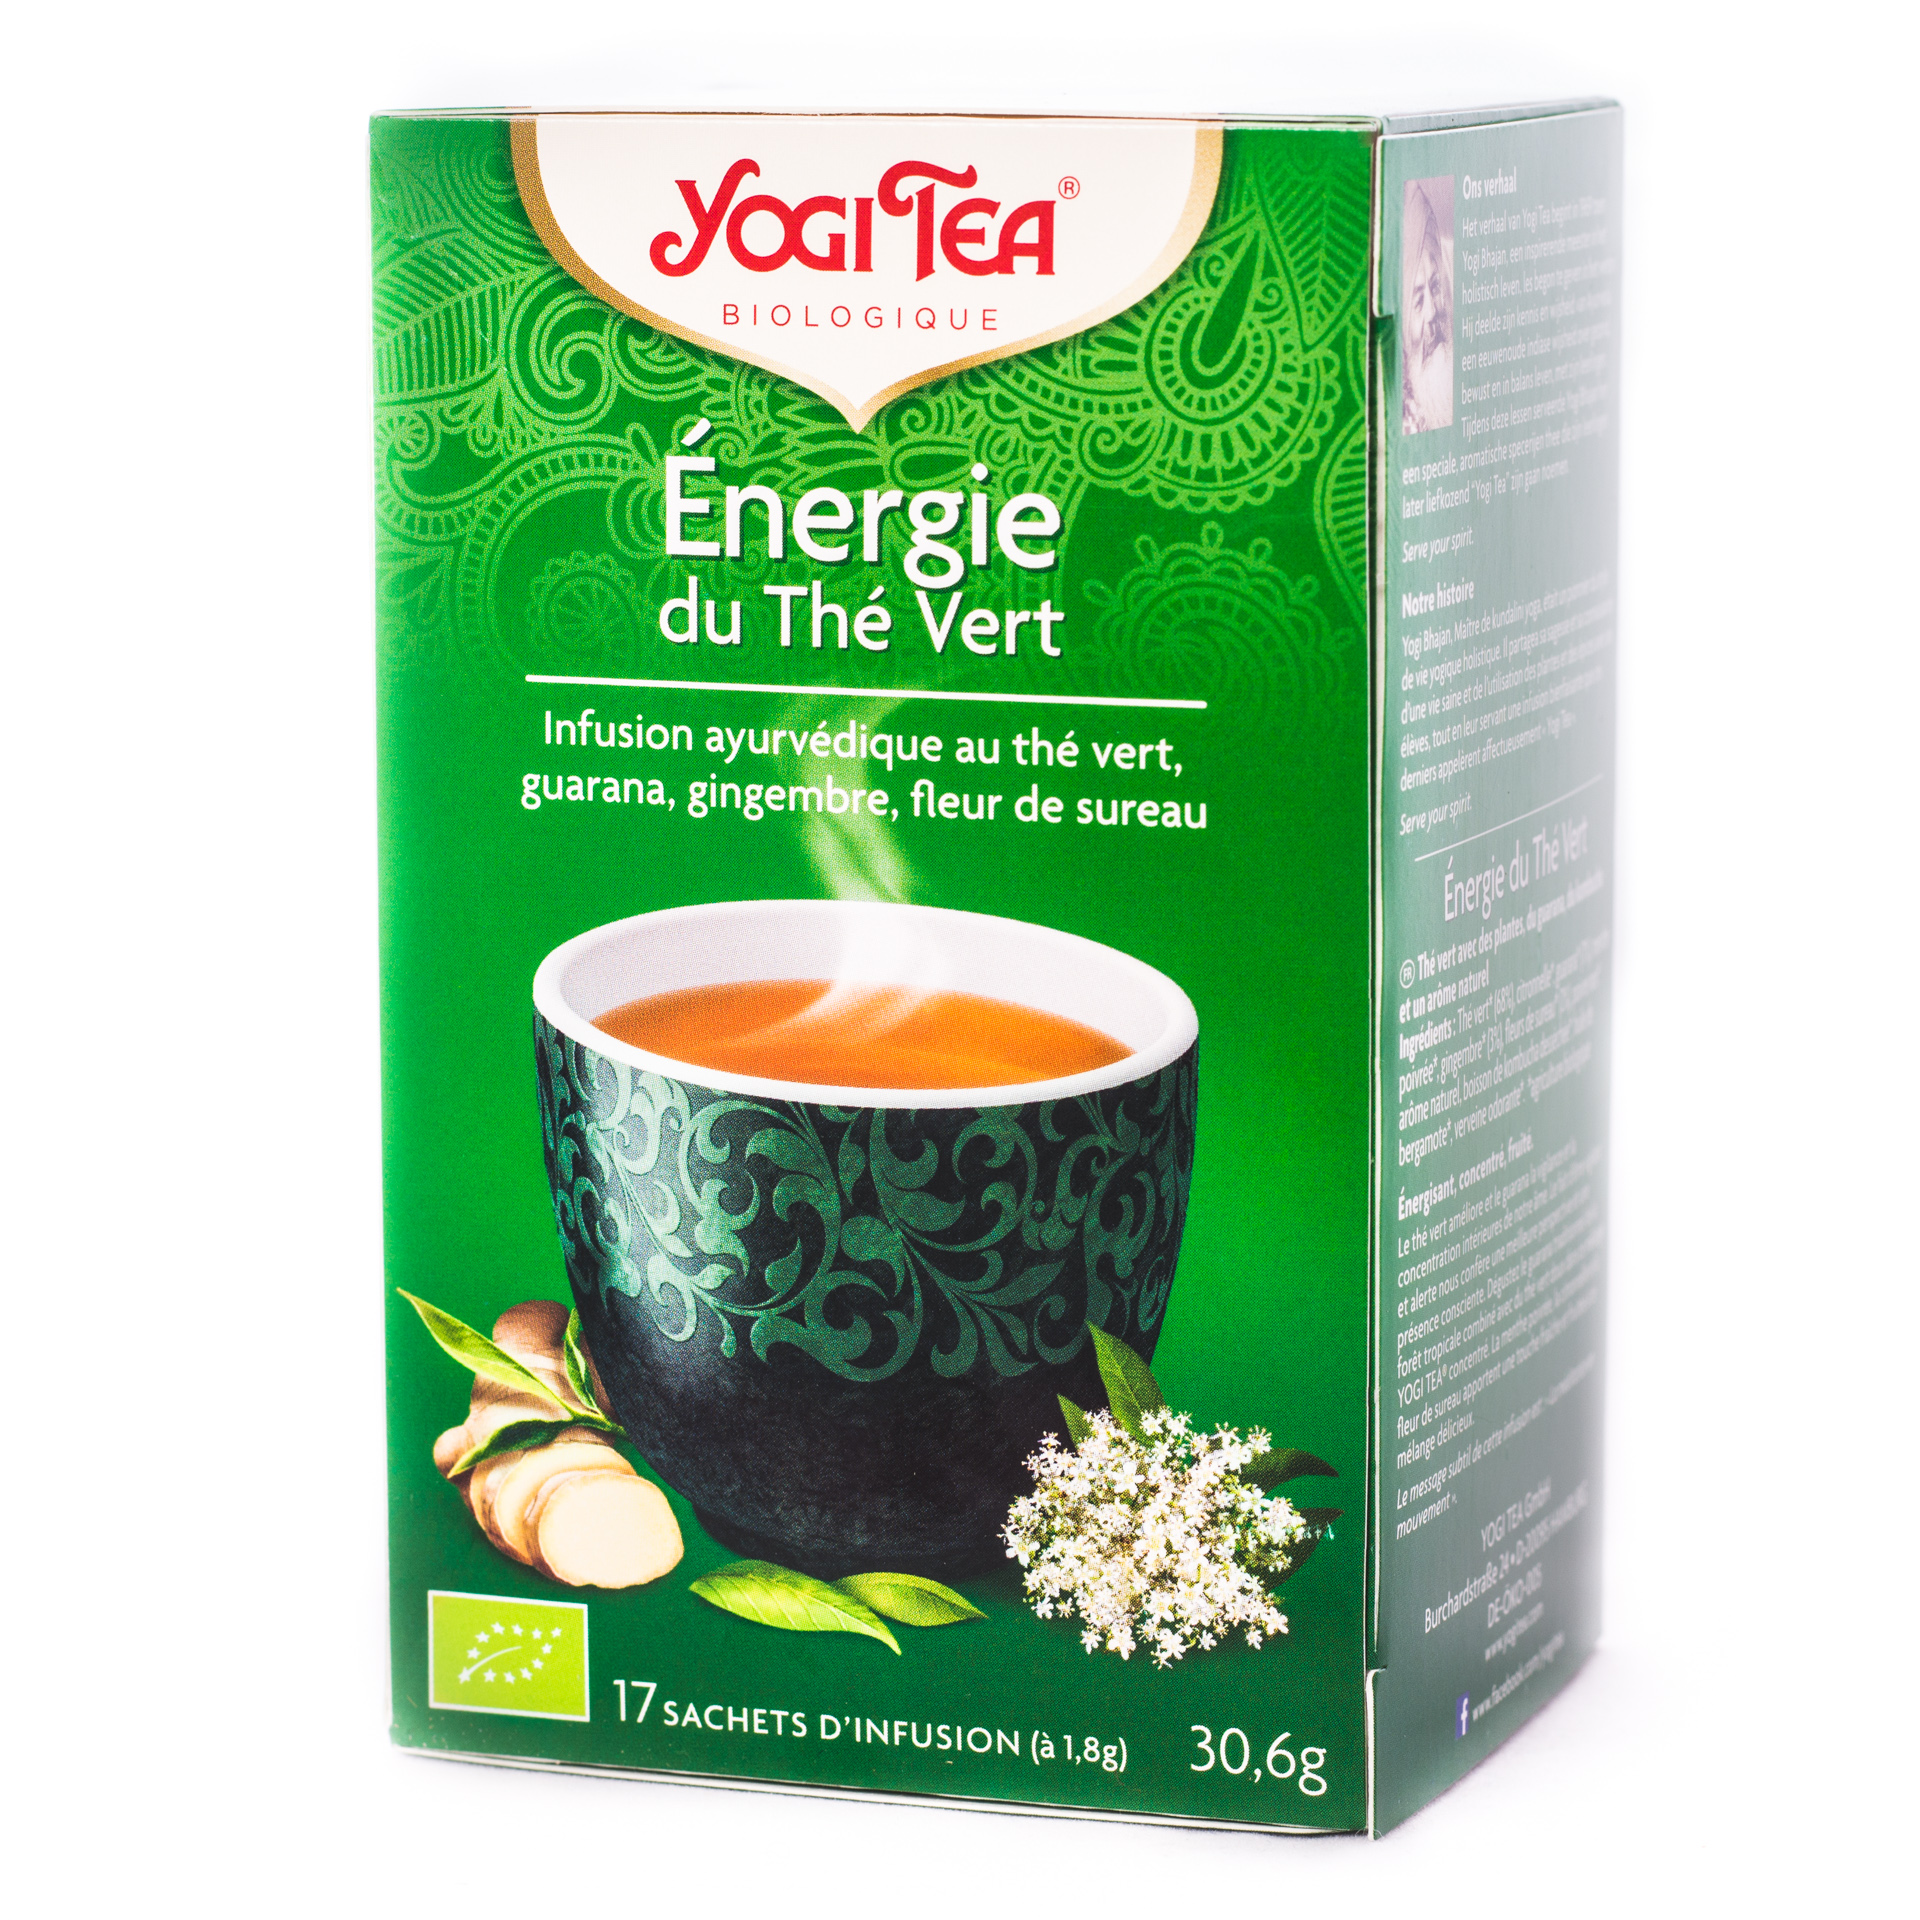 Yogi énergie du thé vert ((CVZHZ3L82272)) € 3,65 - New seeds